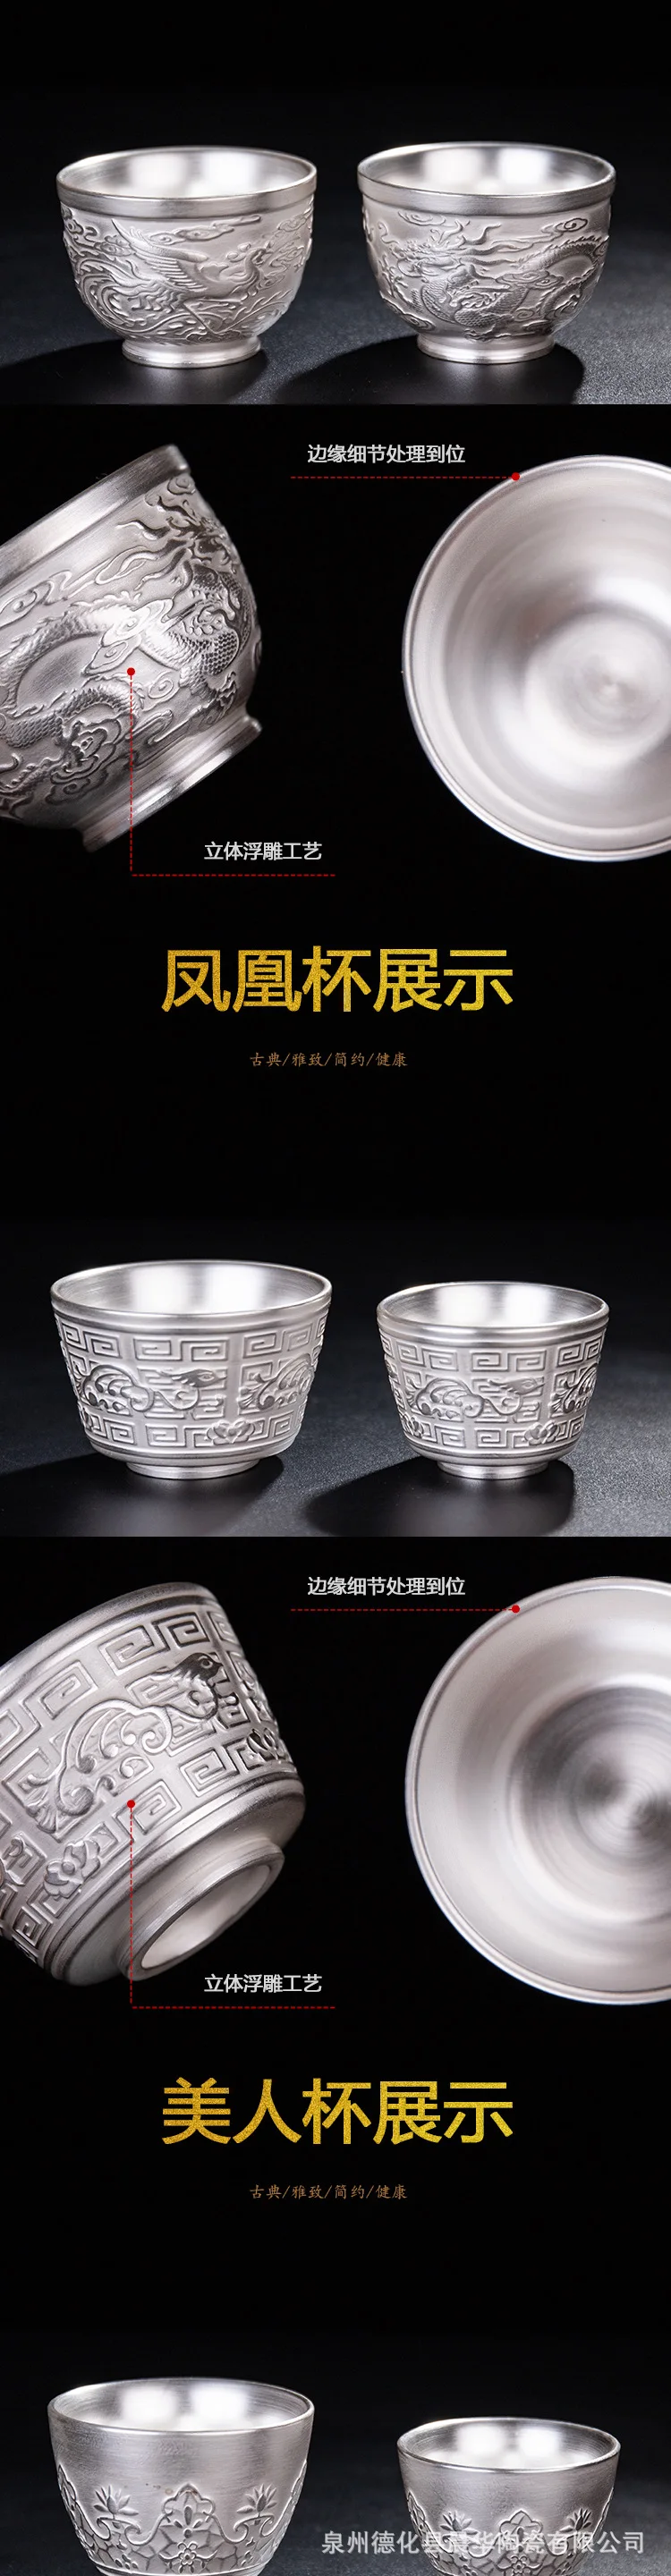 999 Чистое серебро, чашка кунг-фу, ручная работа, серебряная чашка, керамическая инкрустированная Серебряная чайная чаша, высококлассный чайный набор, украшение дома